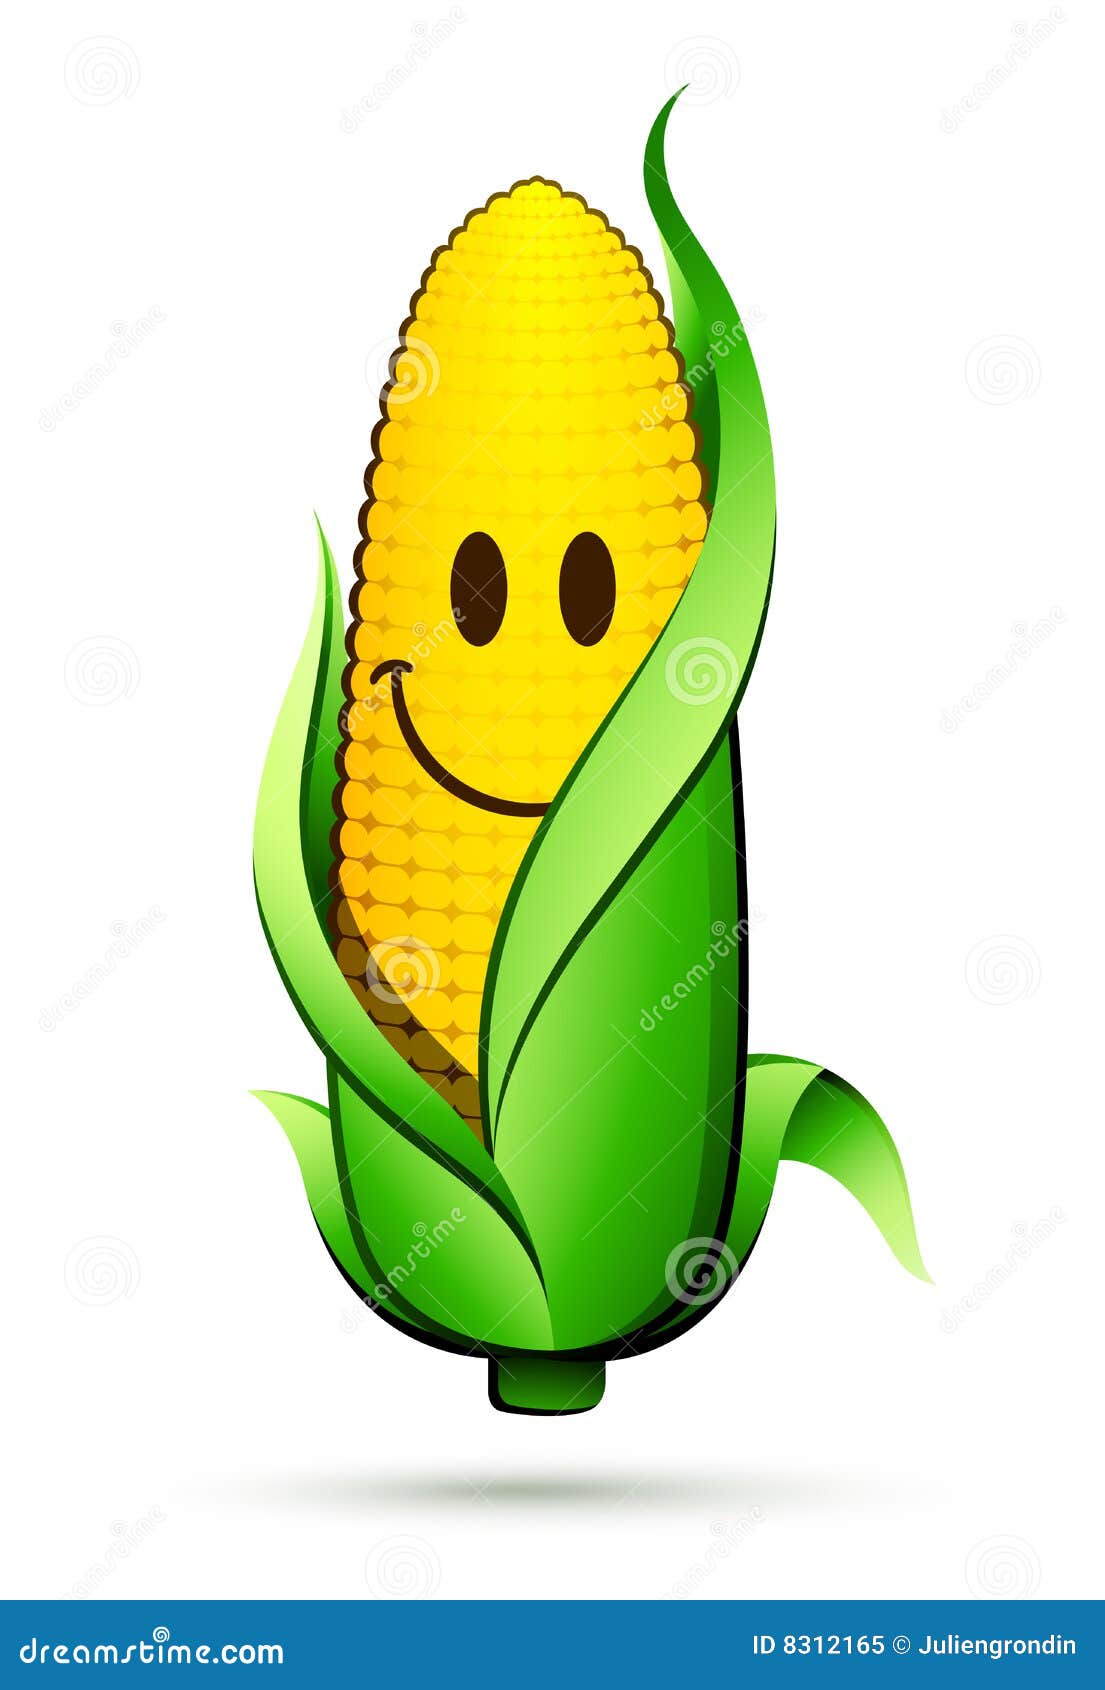 Corn Cob Clip Art Stock Illustrations – 252 Corn Cob Clip Art Stock  Illustrations, Vectors & Clipart - Dreamstime